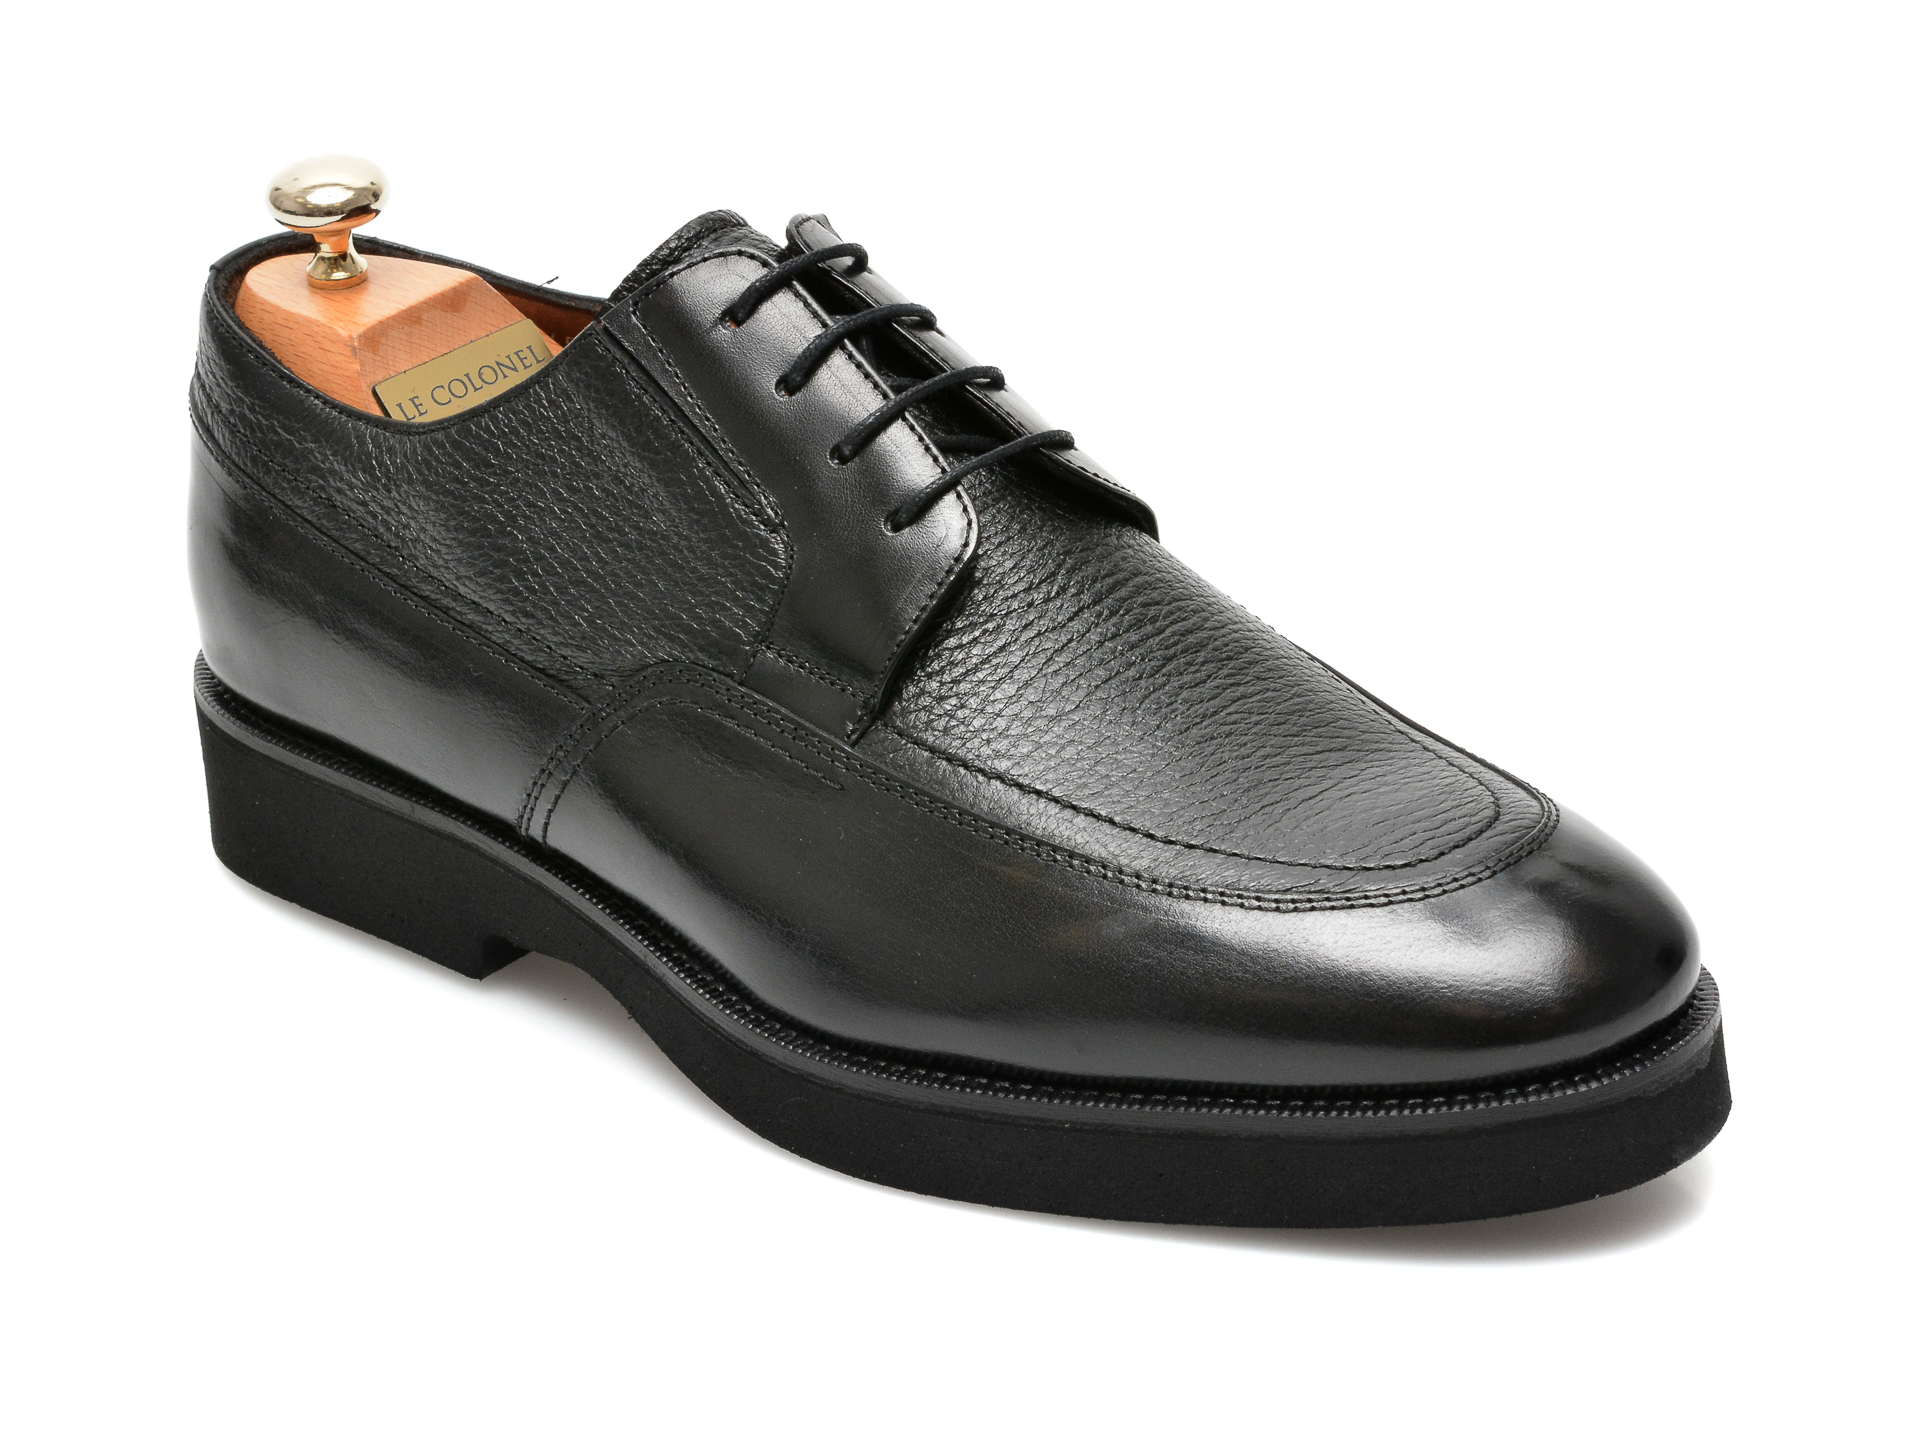 Pantofi LE COLONEL negri, 43452, din piele naturala Le Colonel Le Colonel